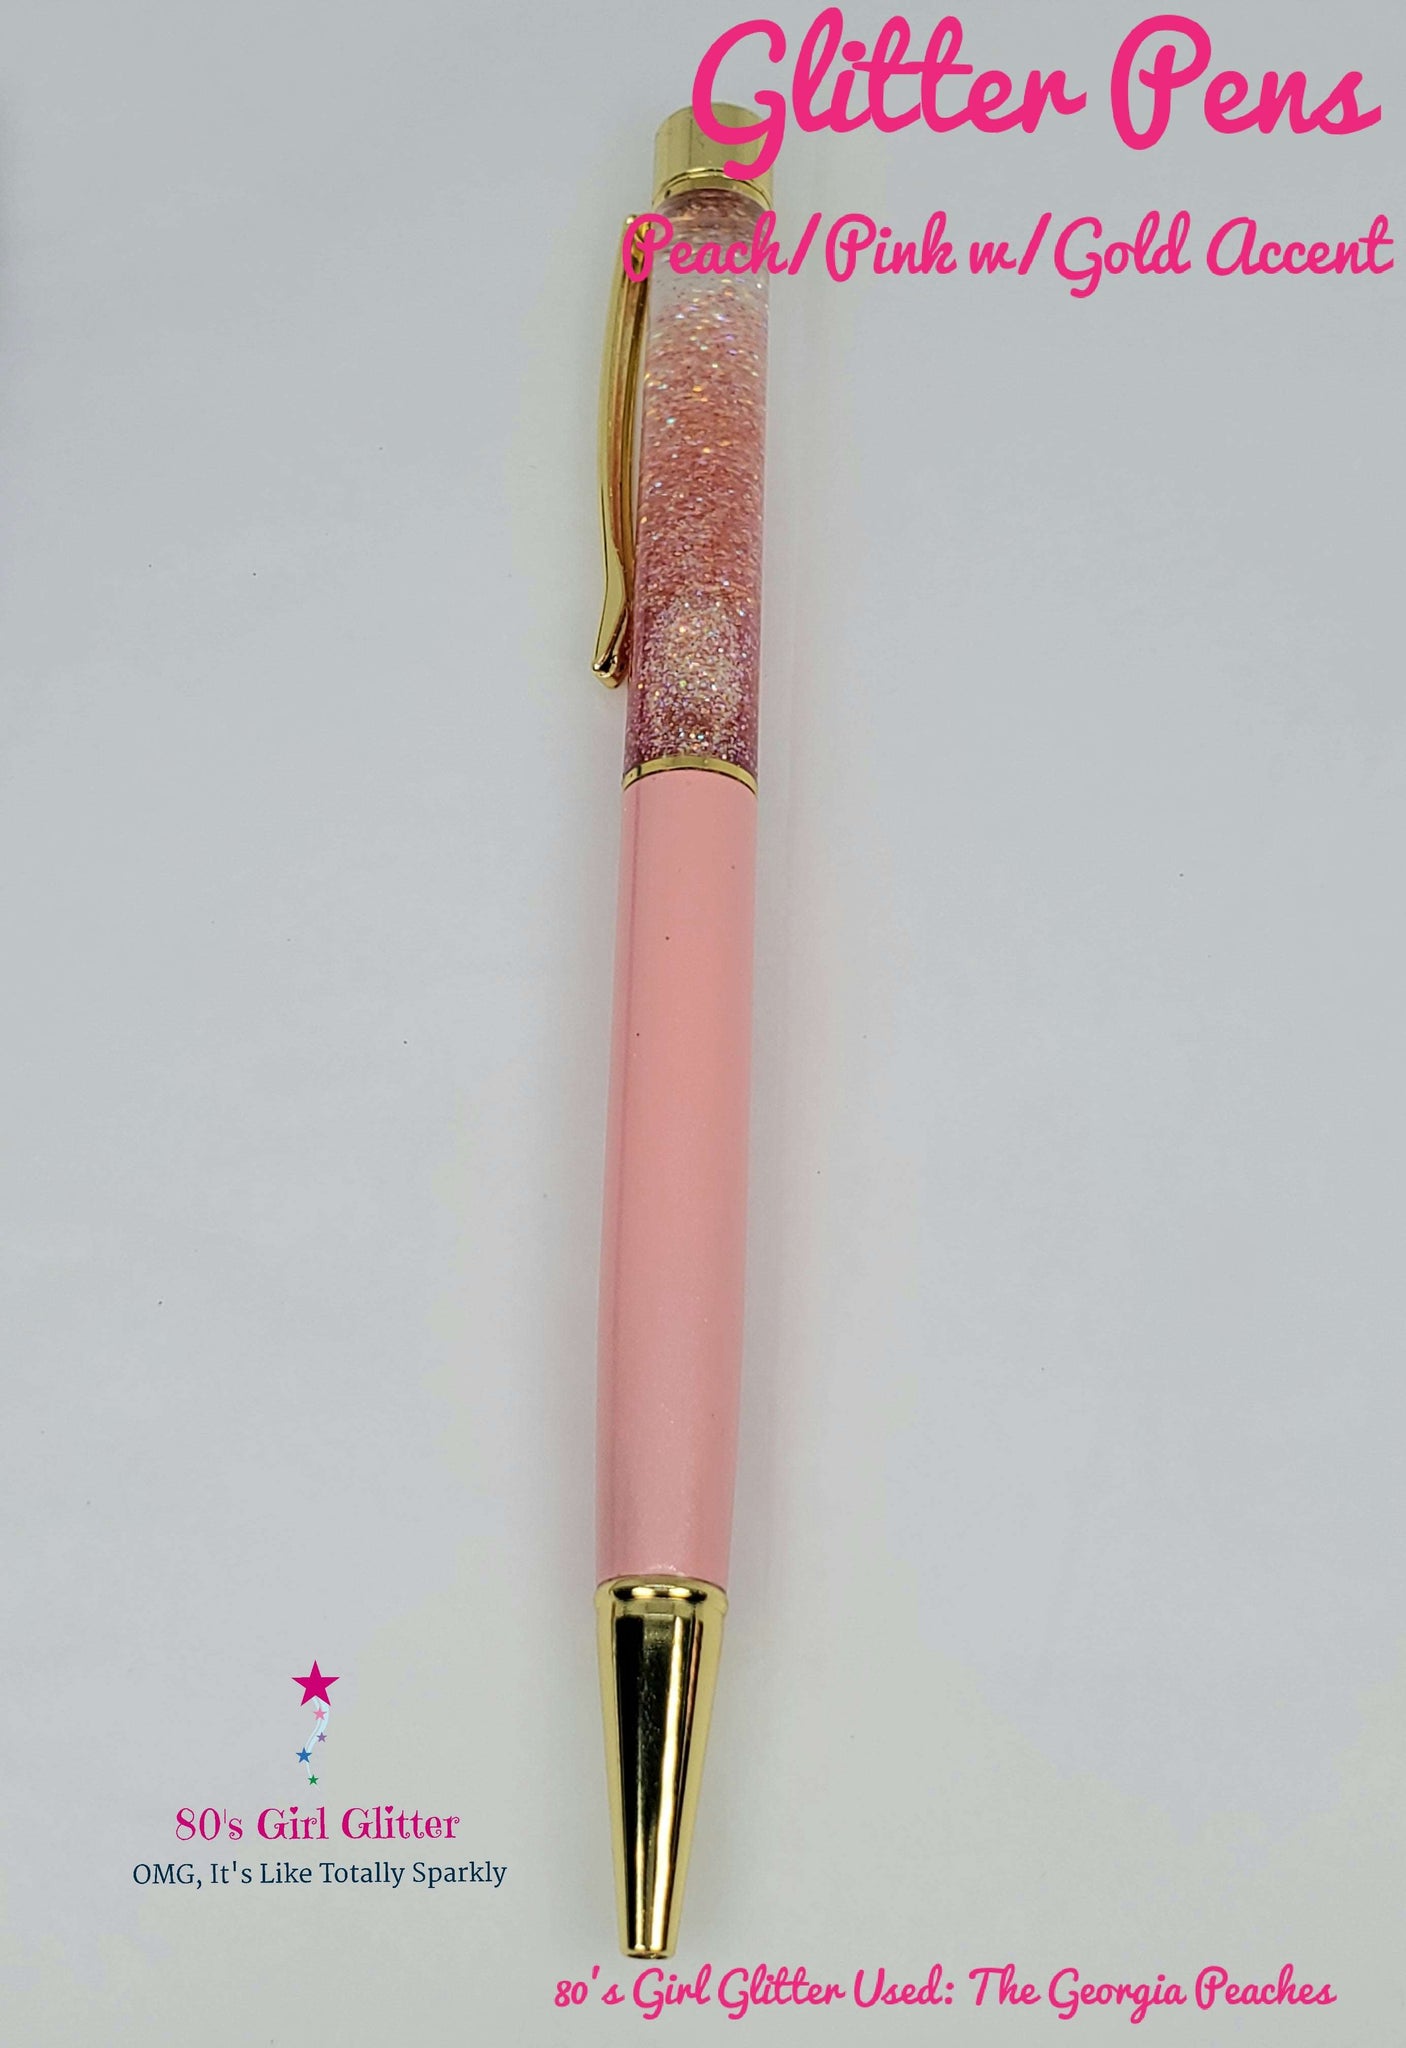 Glitter Pens - Fillable Glitter Pens